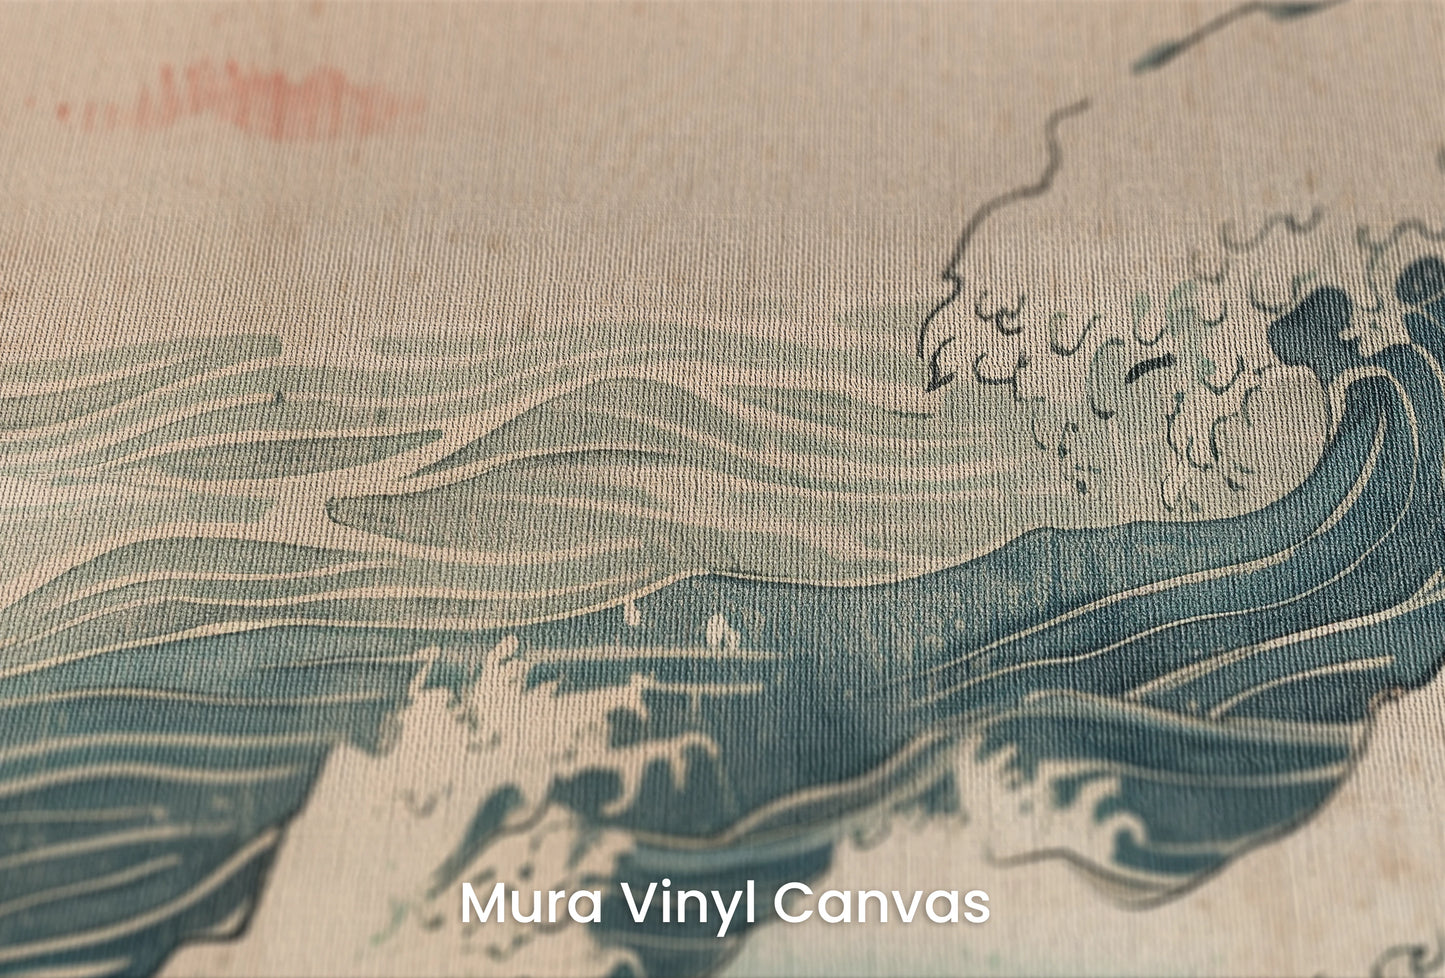 Zbliżenie na artystyczną fototapetę o nazwie Edo's Sunrise na podłożu Mura Vinyl Canvas - faktura naturalnego płótna.